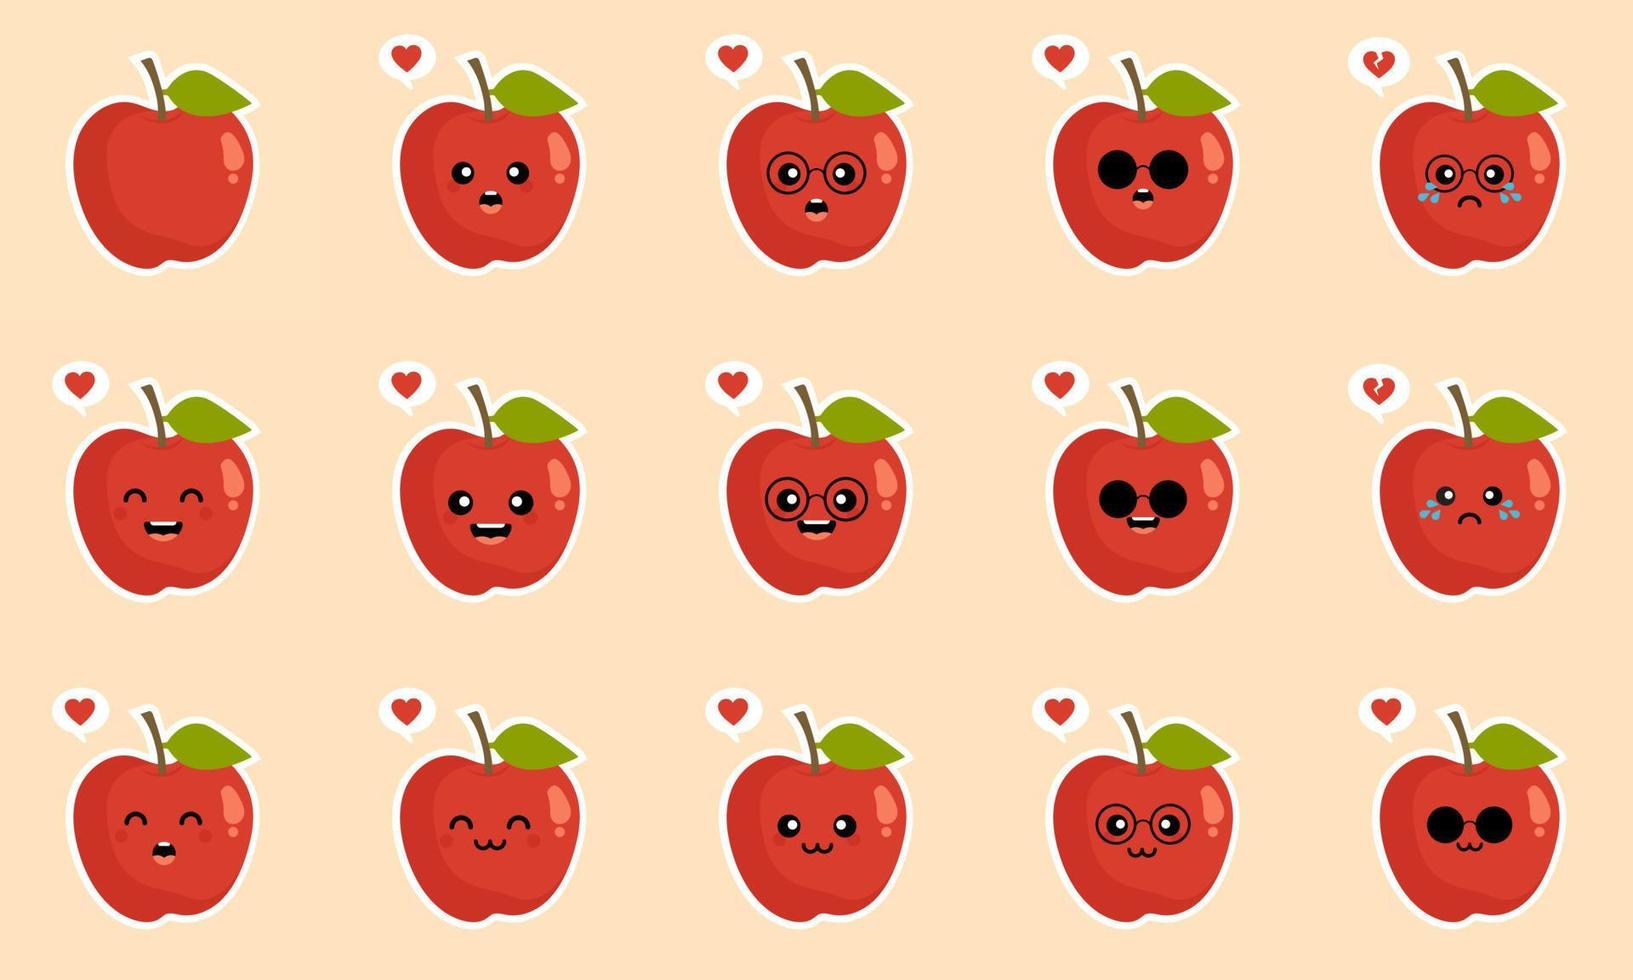 appel. gezond voedselconcept. emoji emoticon collectie. stripfiguren voor kinderen kleurboek, kleurplaten, t-shirt print, pictogram, logo, label, patch, sticker. appels, een modern ontwerp met rode appel vector